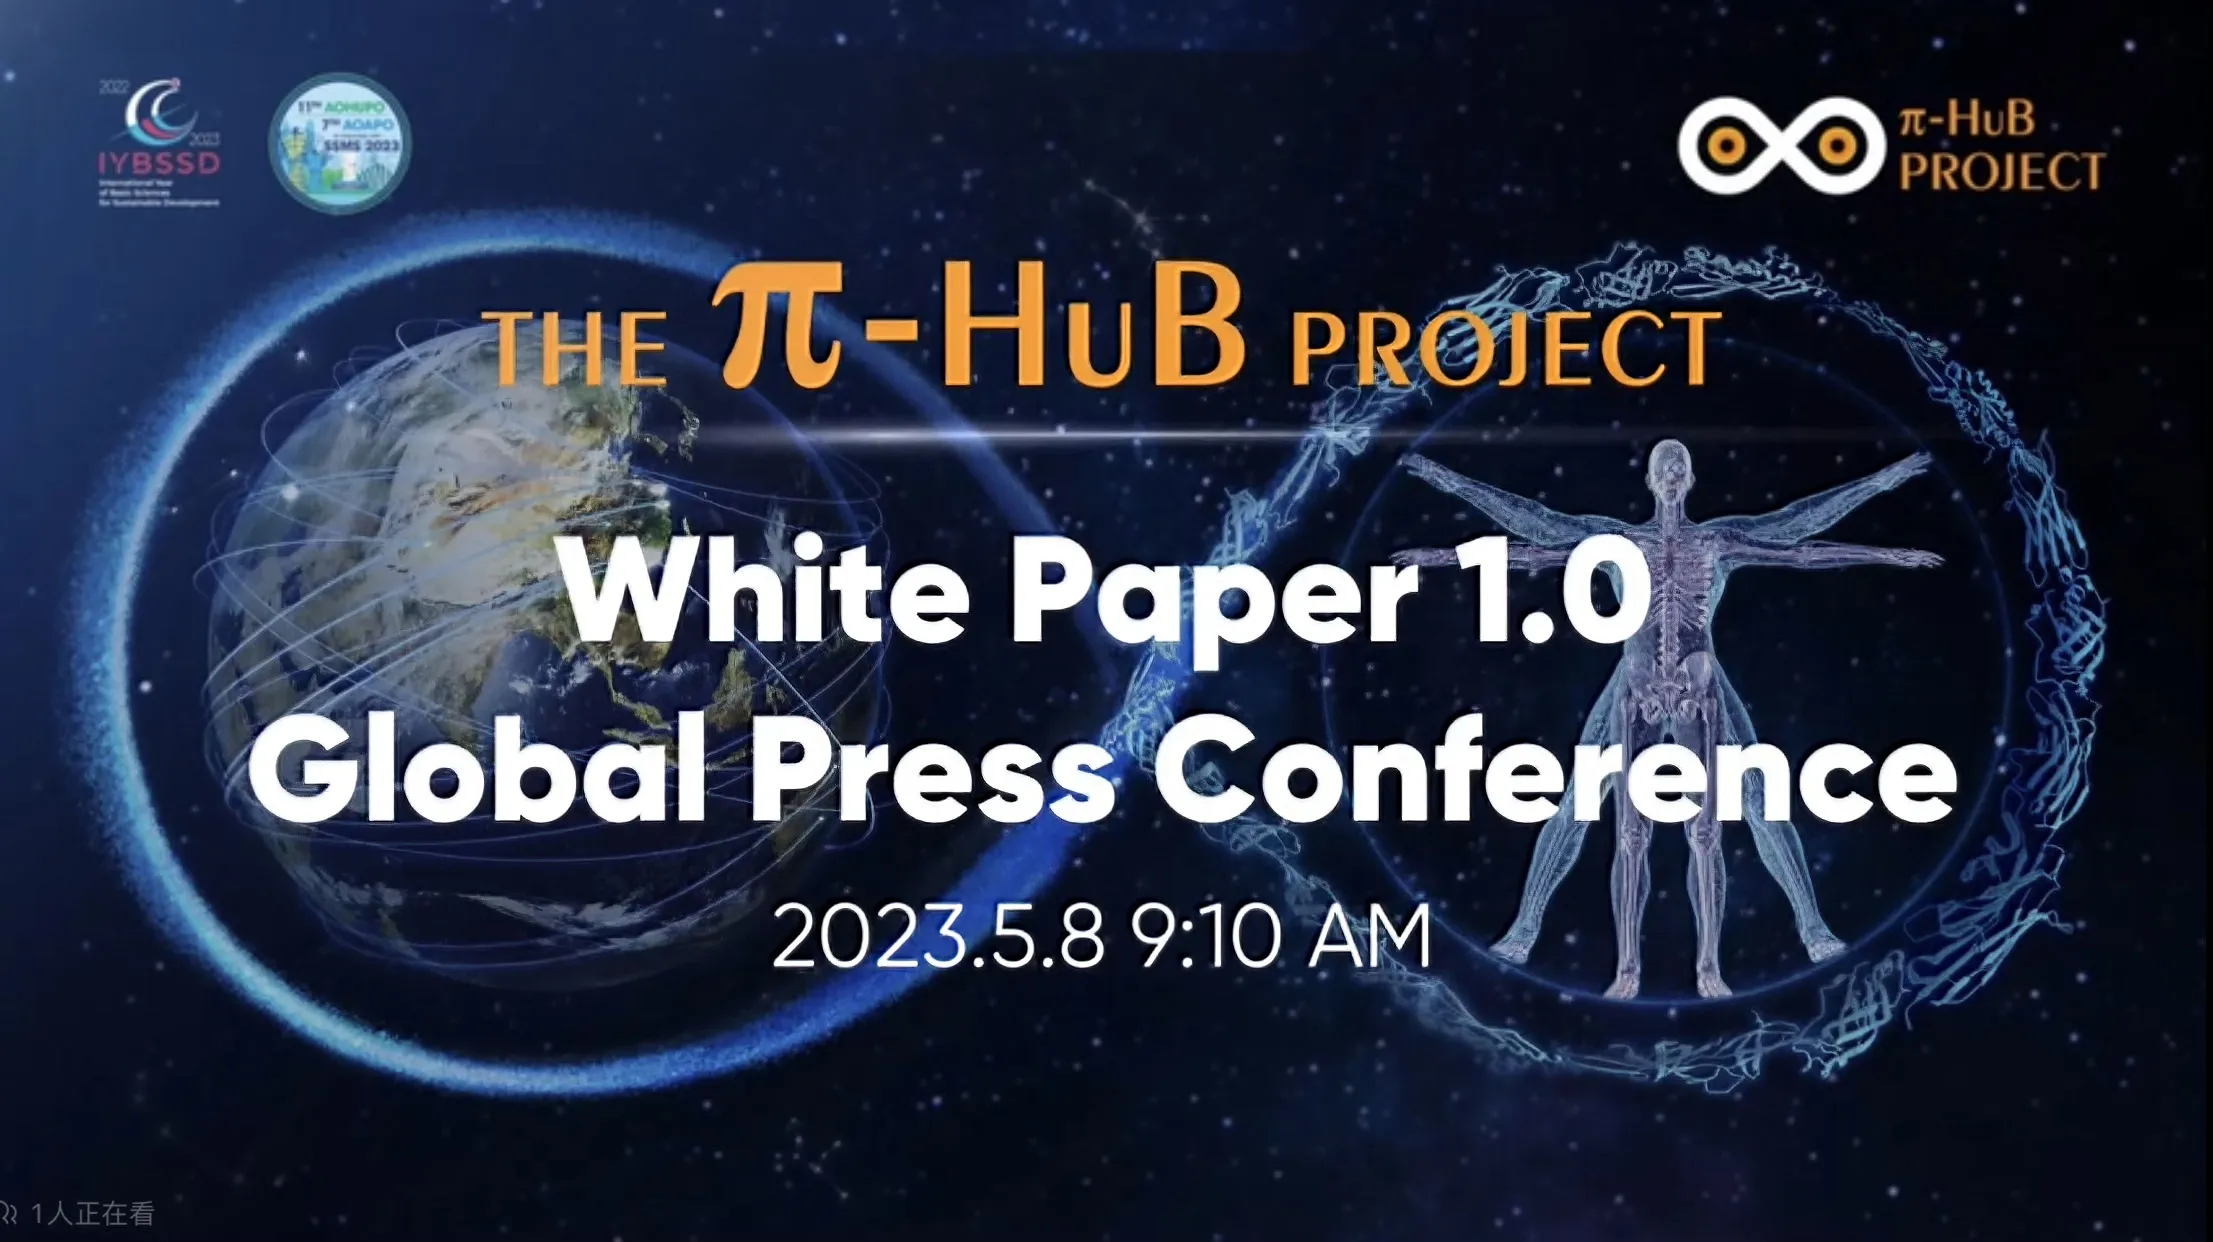 π-HuB Project White Paper 1.0 Unveiled at 11th AOHUPO Congress in Singapore